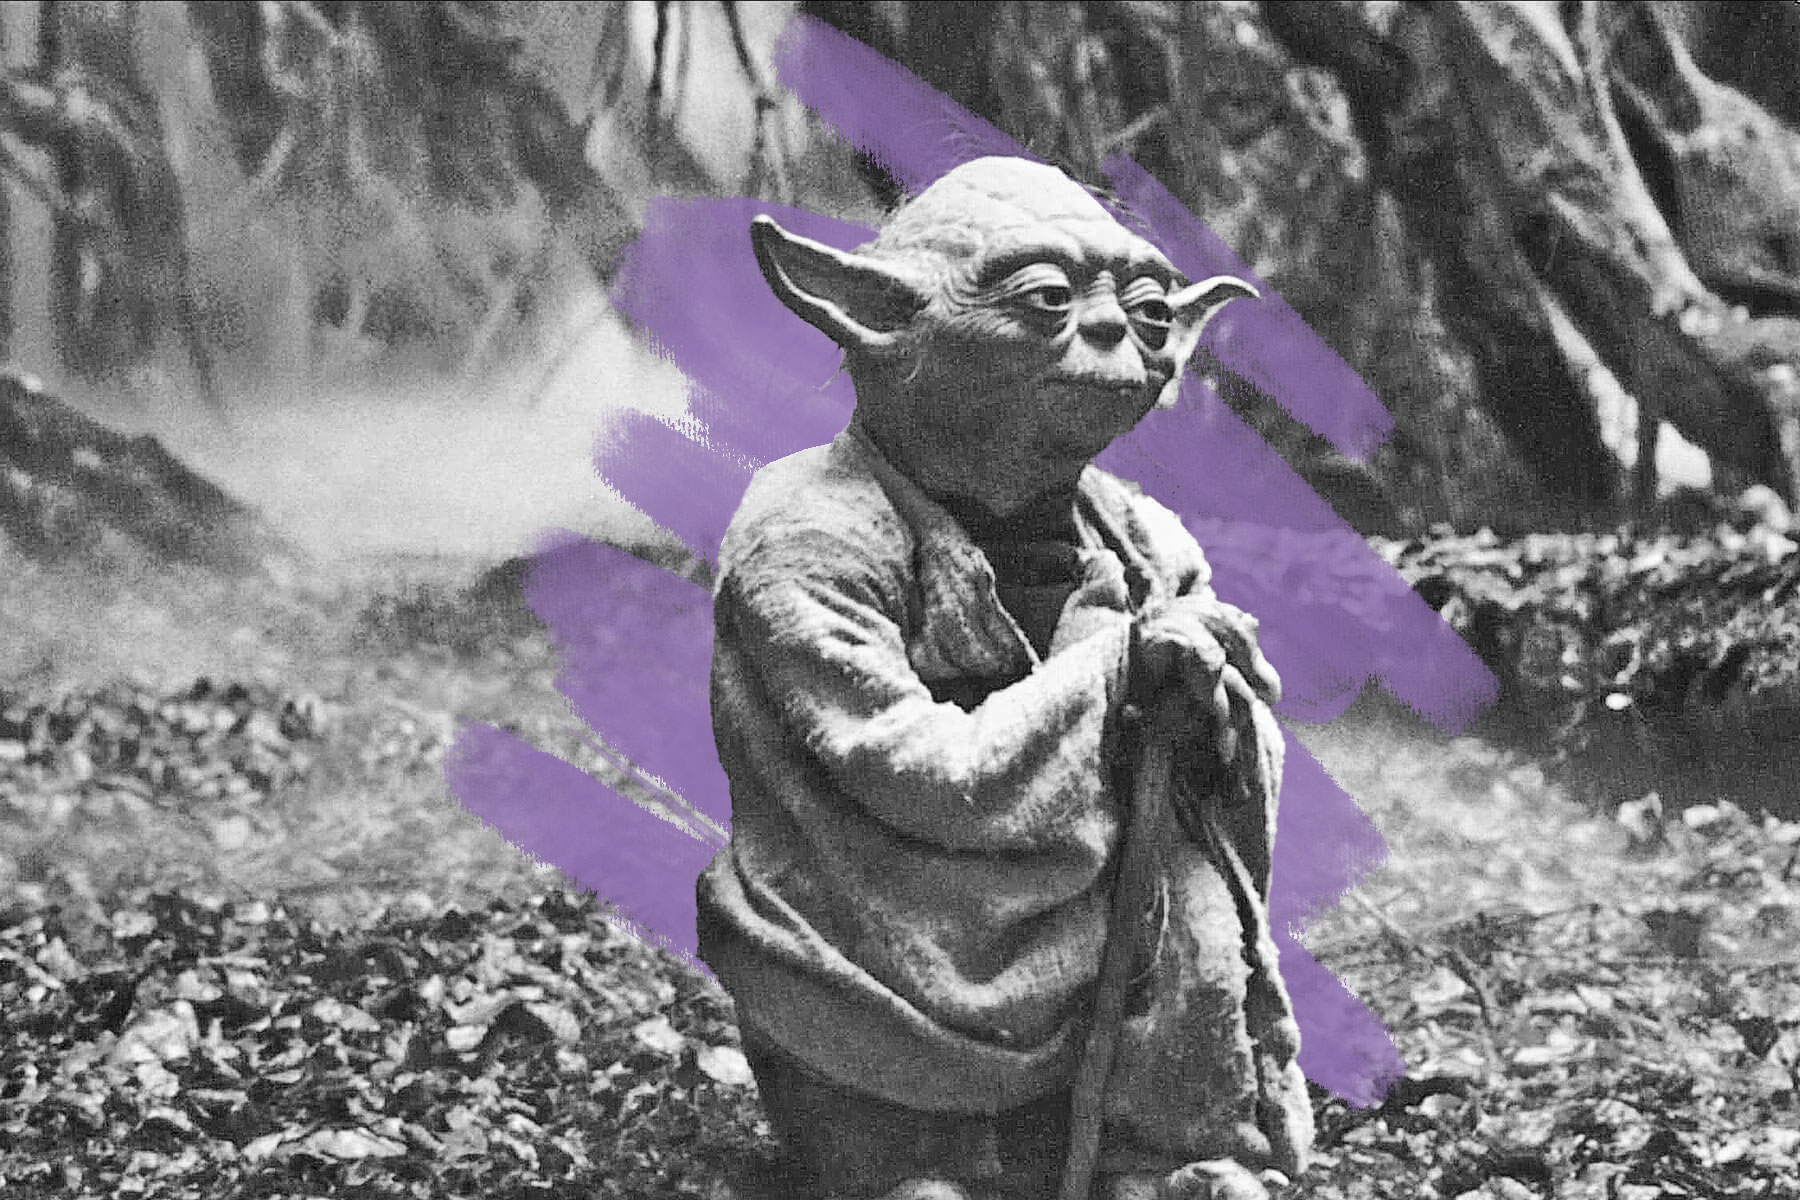 Yoda, Star Wars Episode V